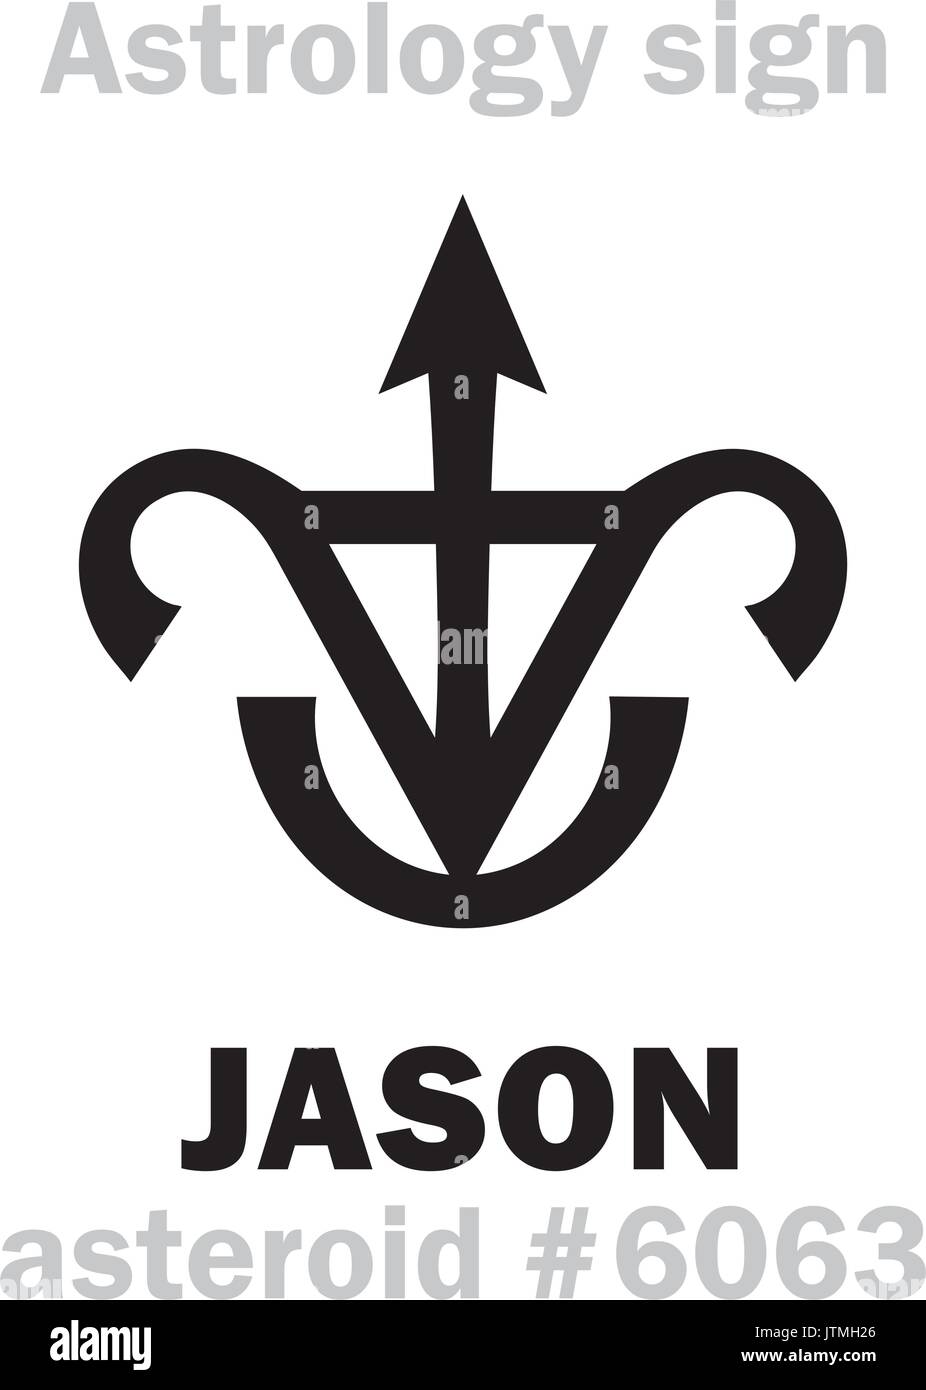 Alfabeto astrologia: Jason, asteroide #6063. Caratteri geroglifici segno (simbolo unico). Illustrazione Vettoriale